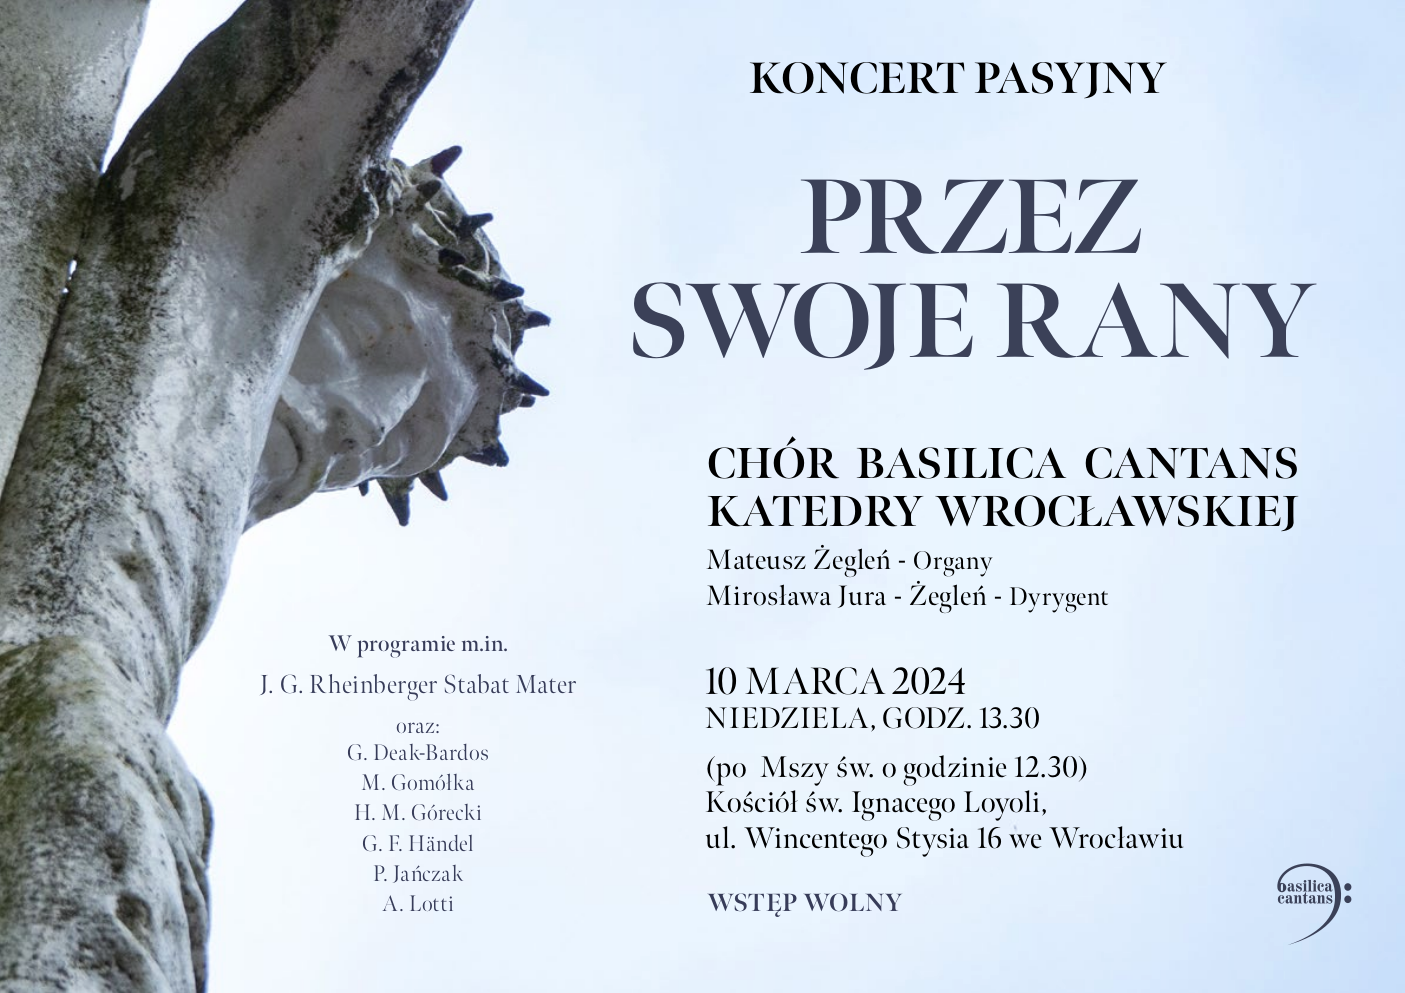 You are currently viewing [2024-03-10] Koncert pasyjny “Przez swoje rany” (kościół św. Ignacego Loyoli)